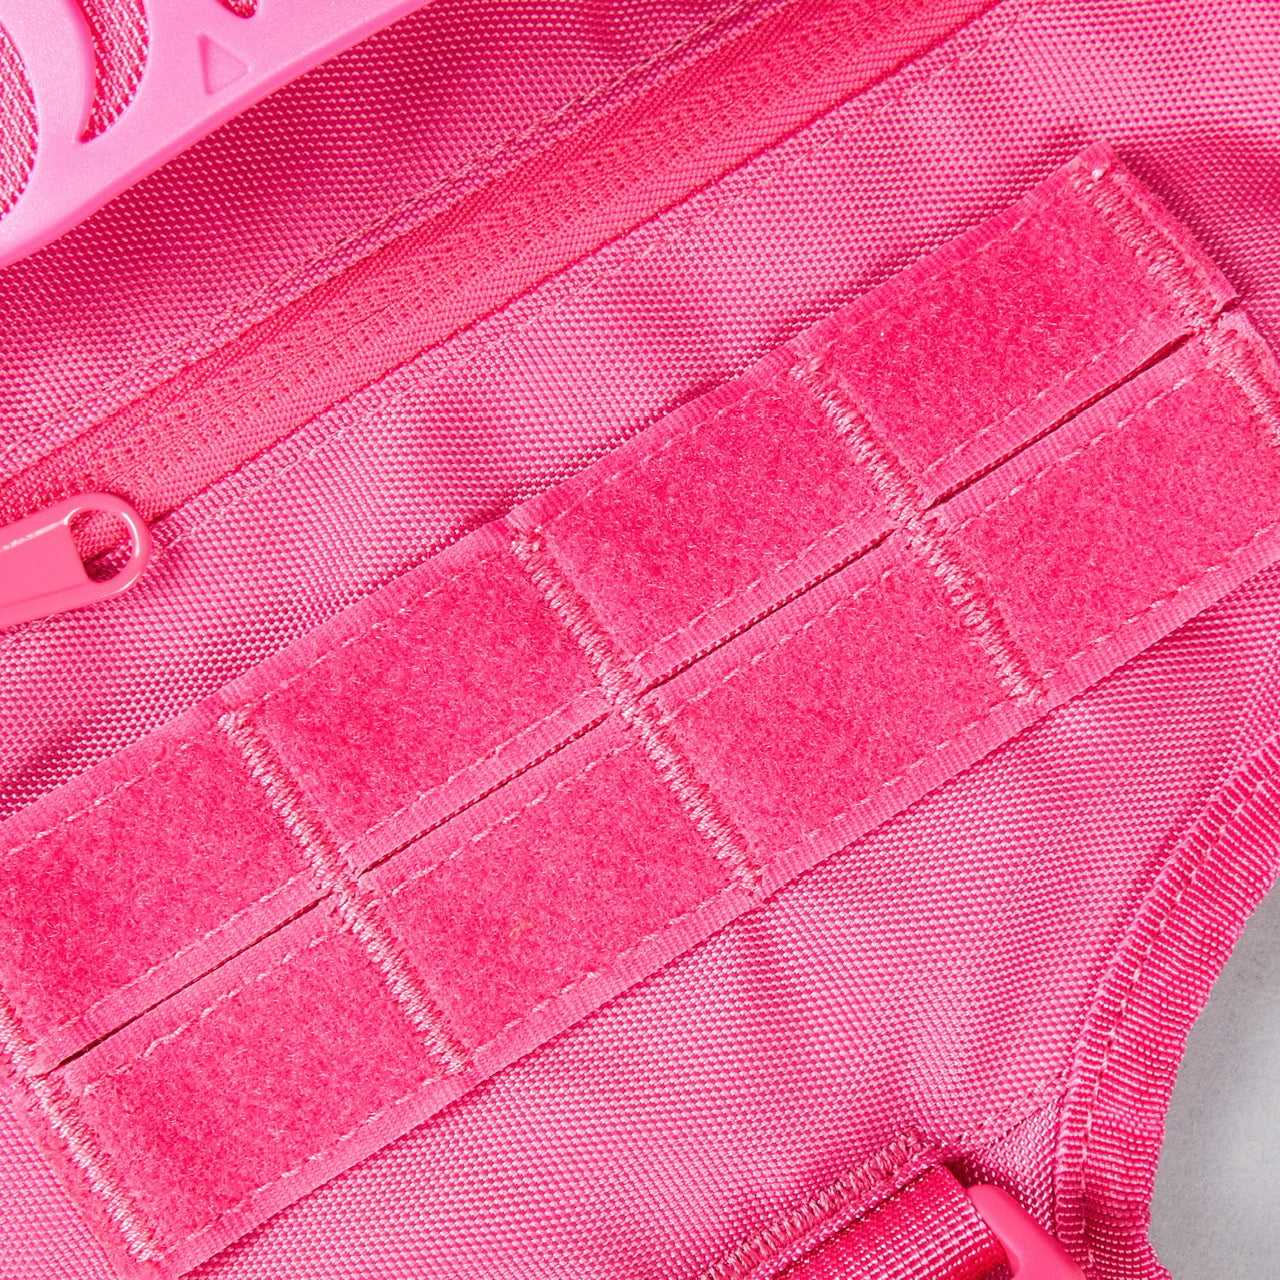 Pink Goddess Tactical Dog Vest Harness